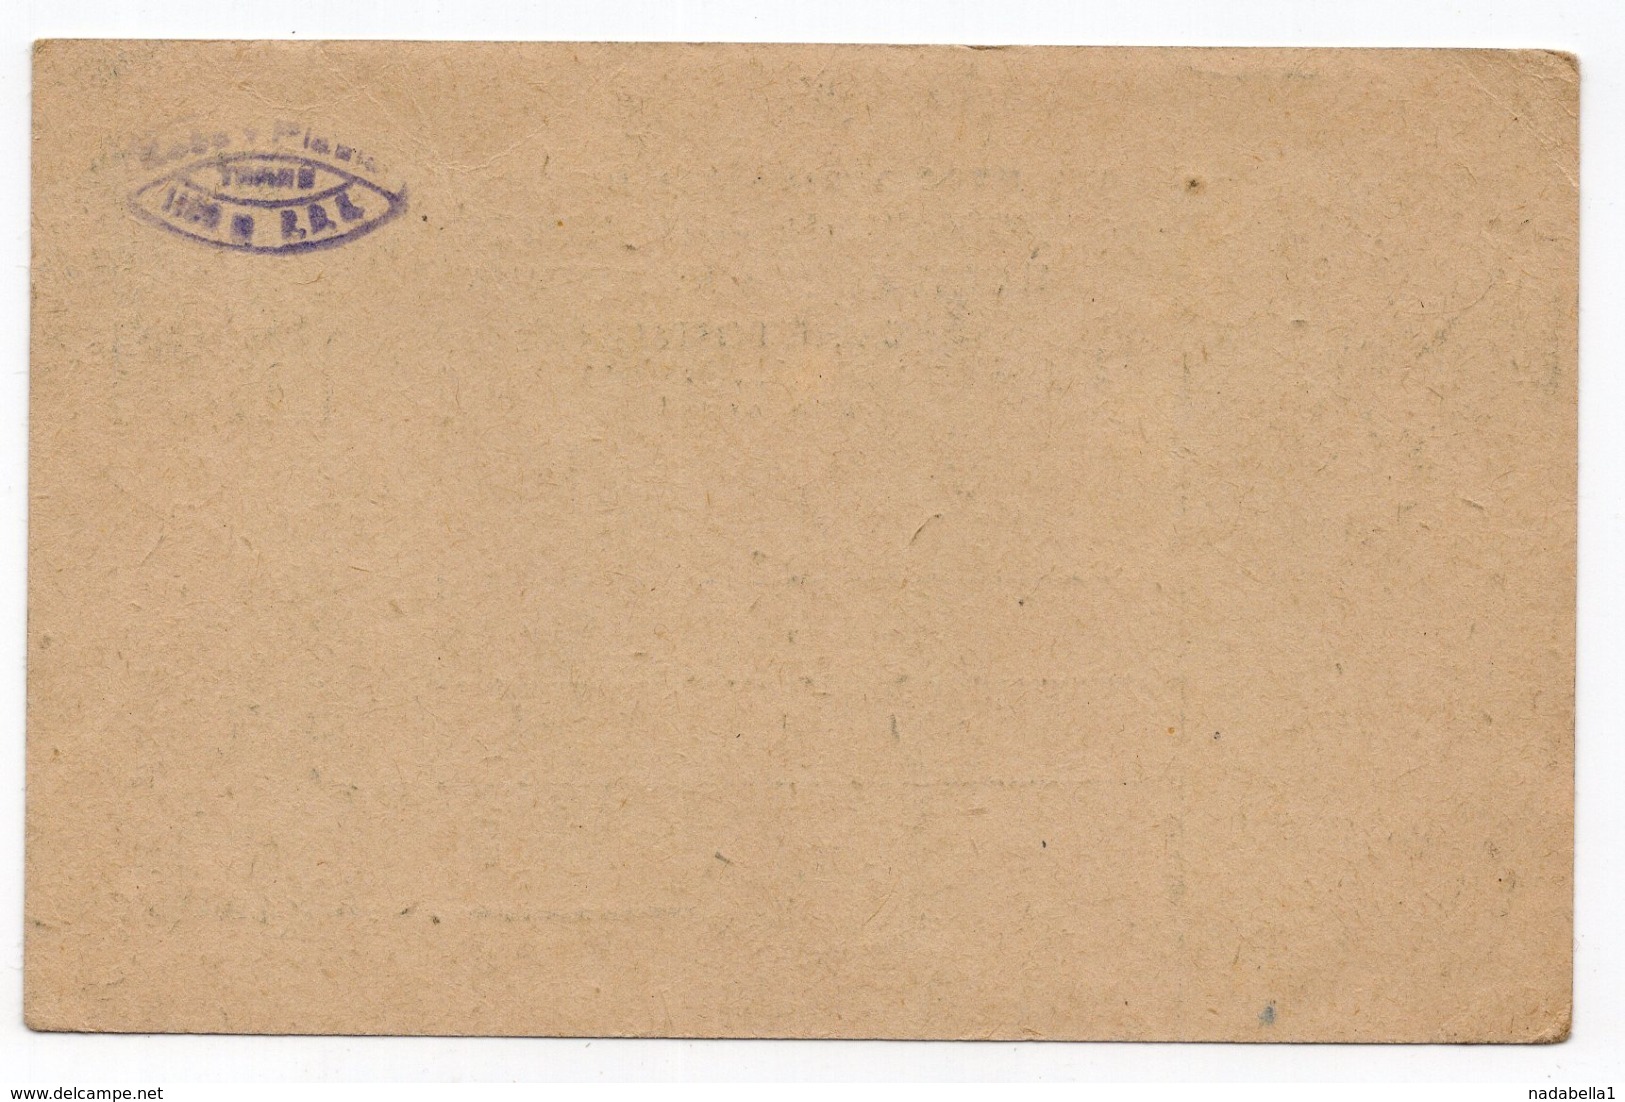 1950 FNR YUGOSLAVIA, TITO, 2 DINARA, STATIONERY CARD, MINT - Postal Stationery